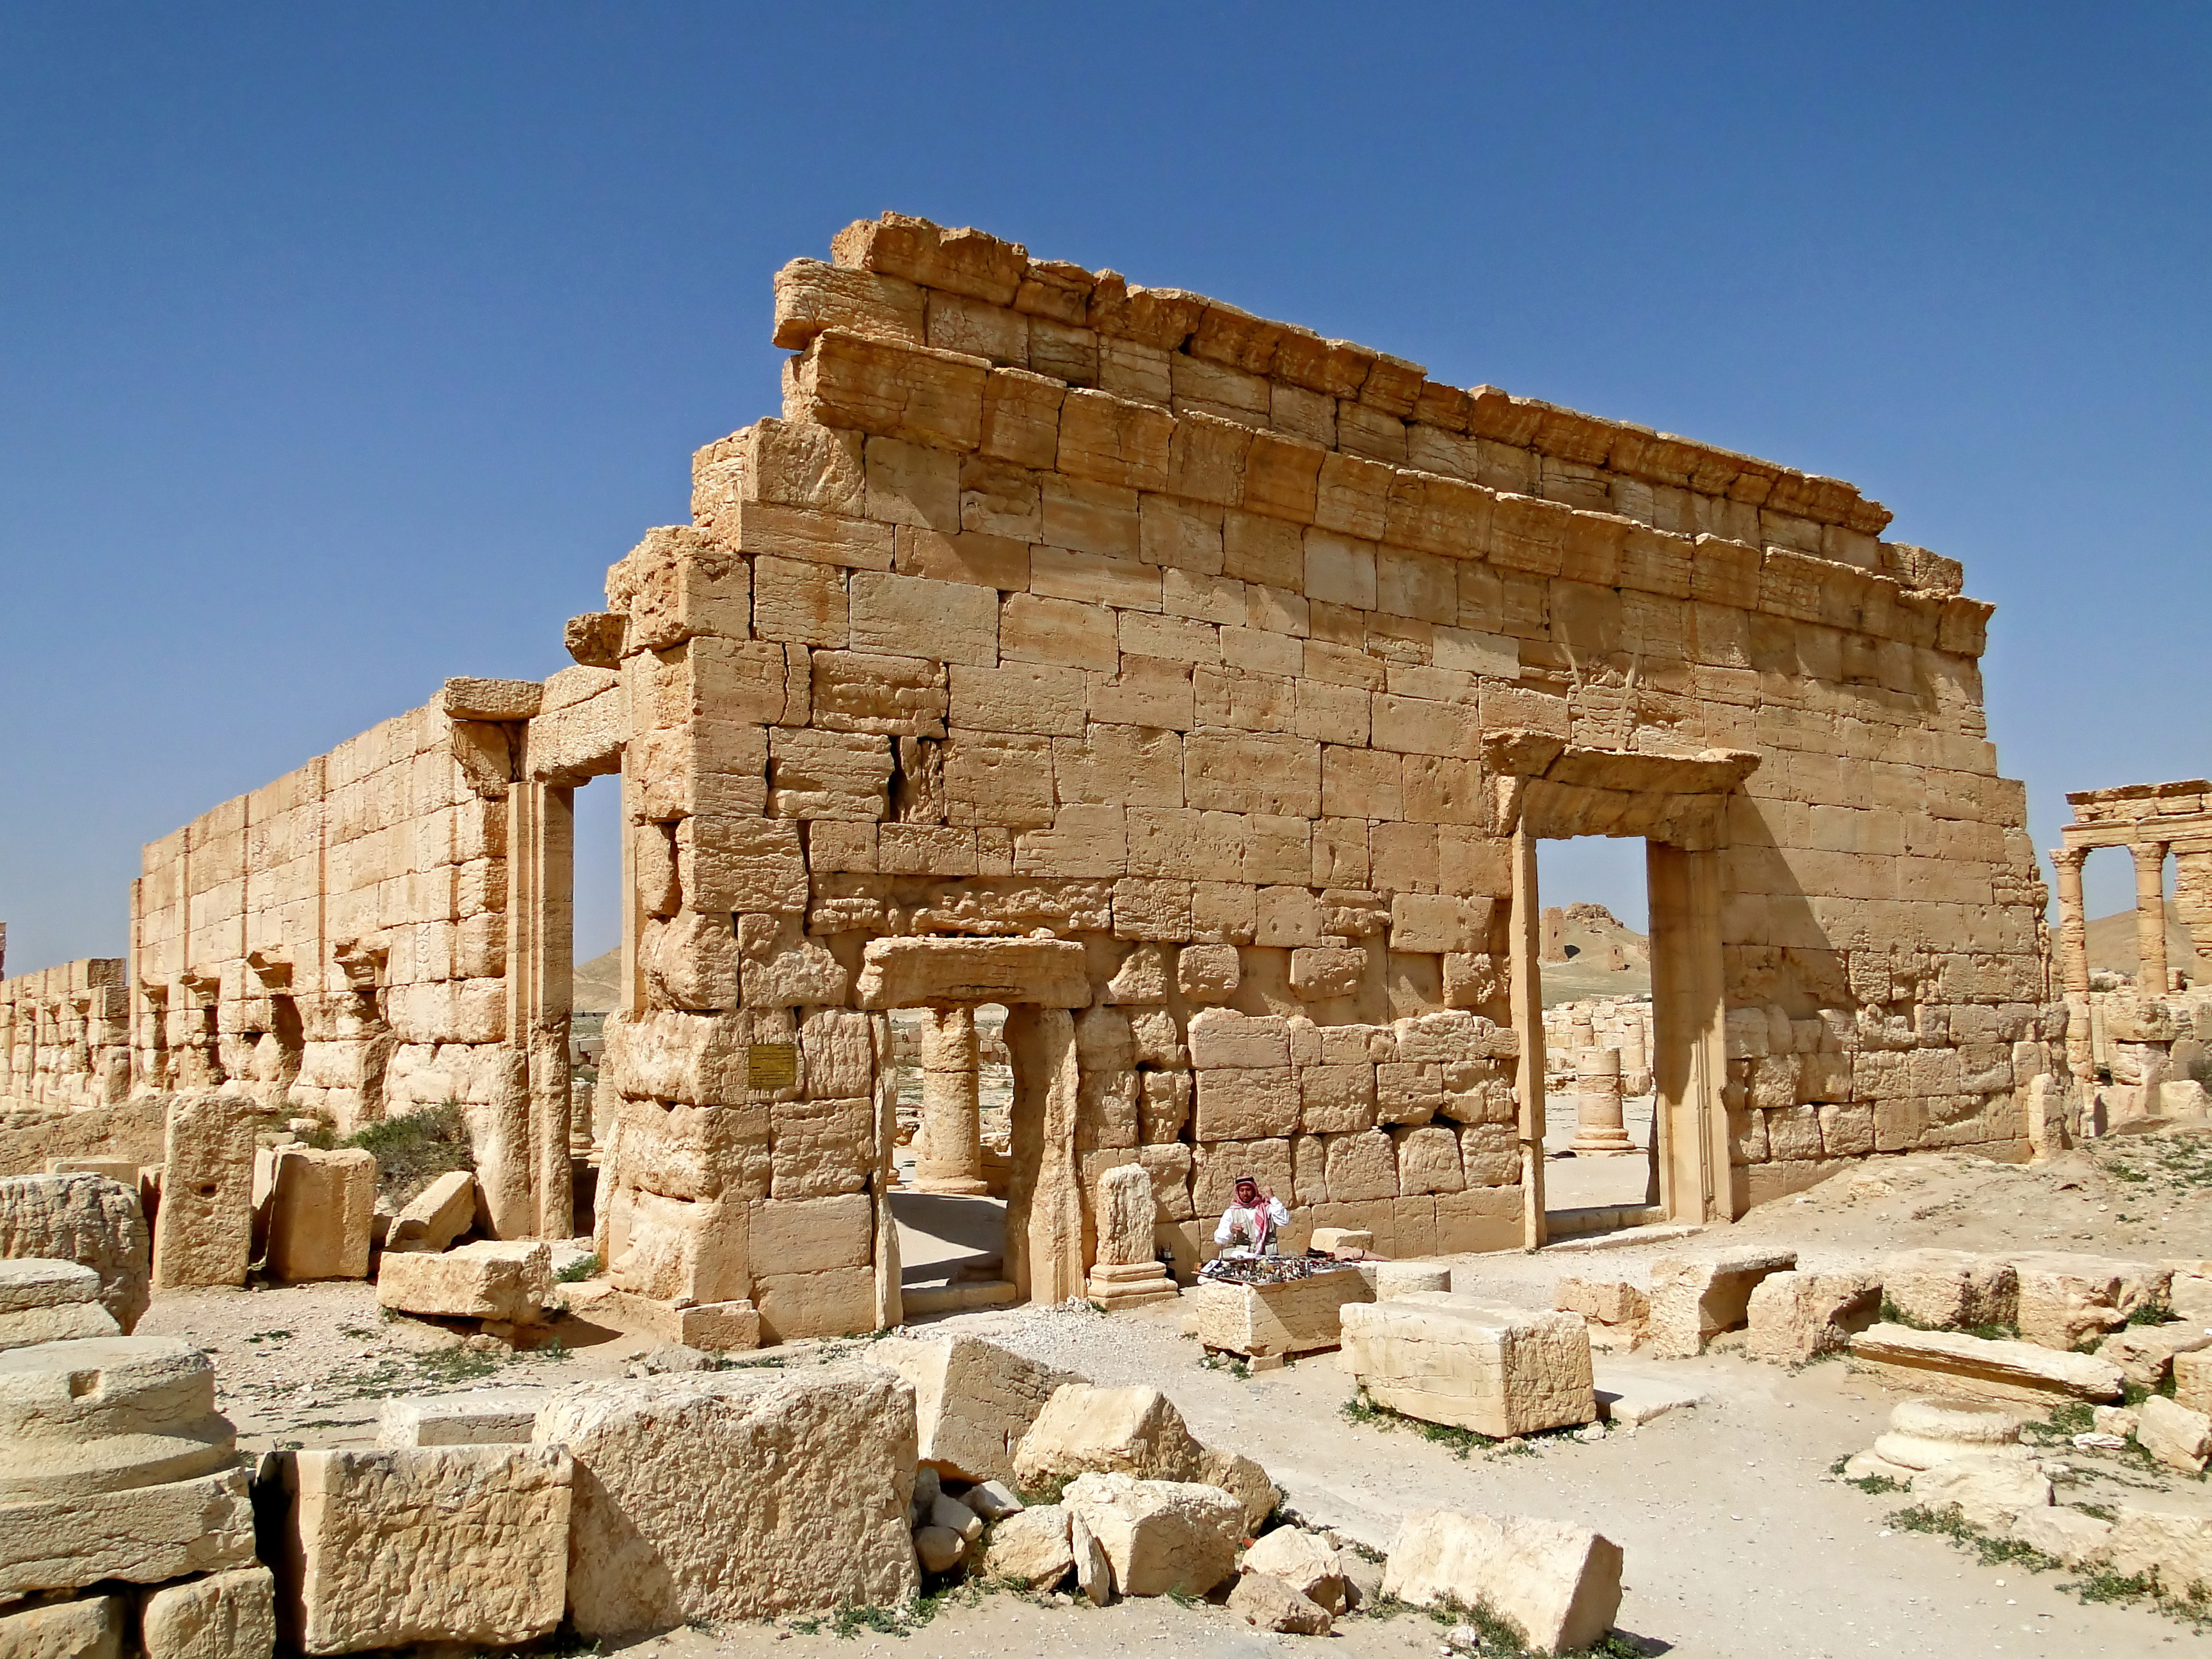 Agora of Palmyra